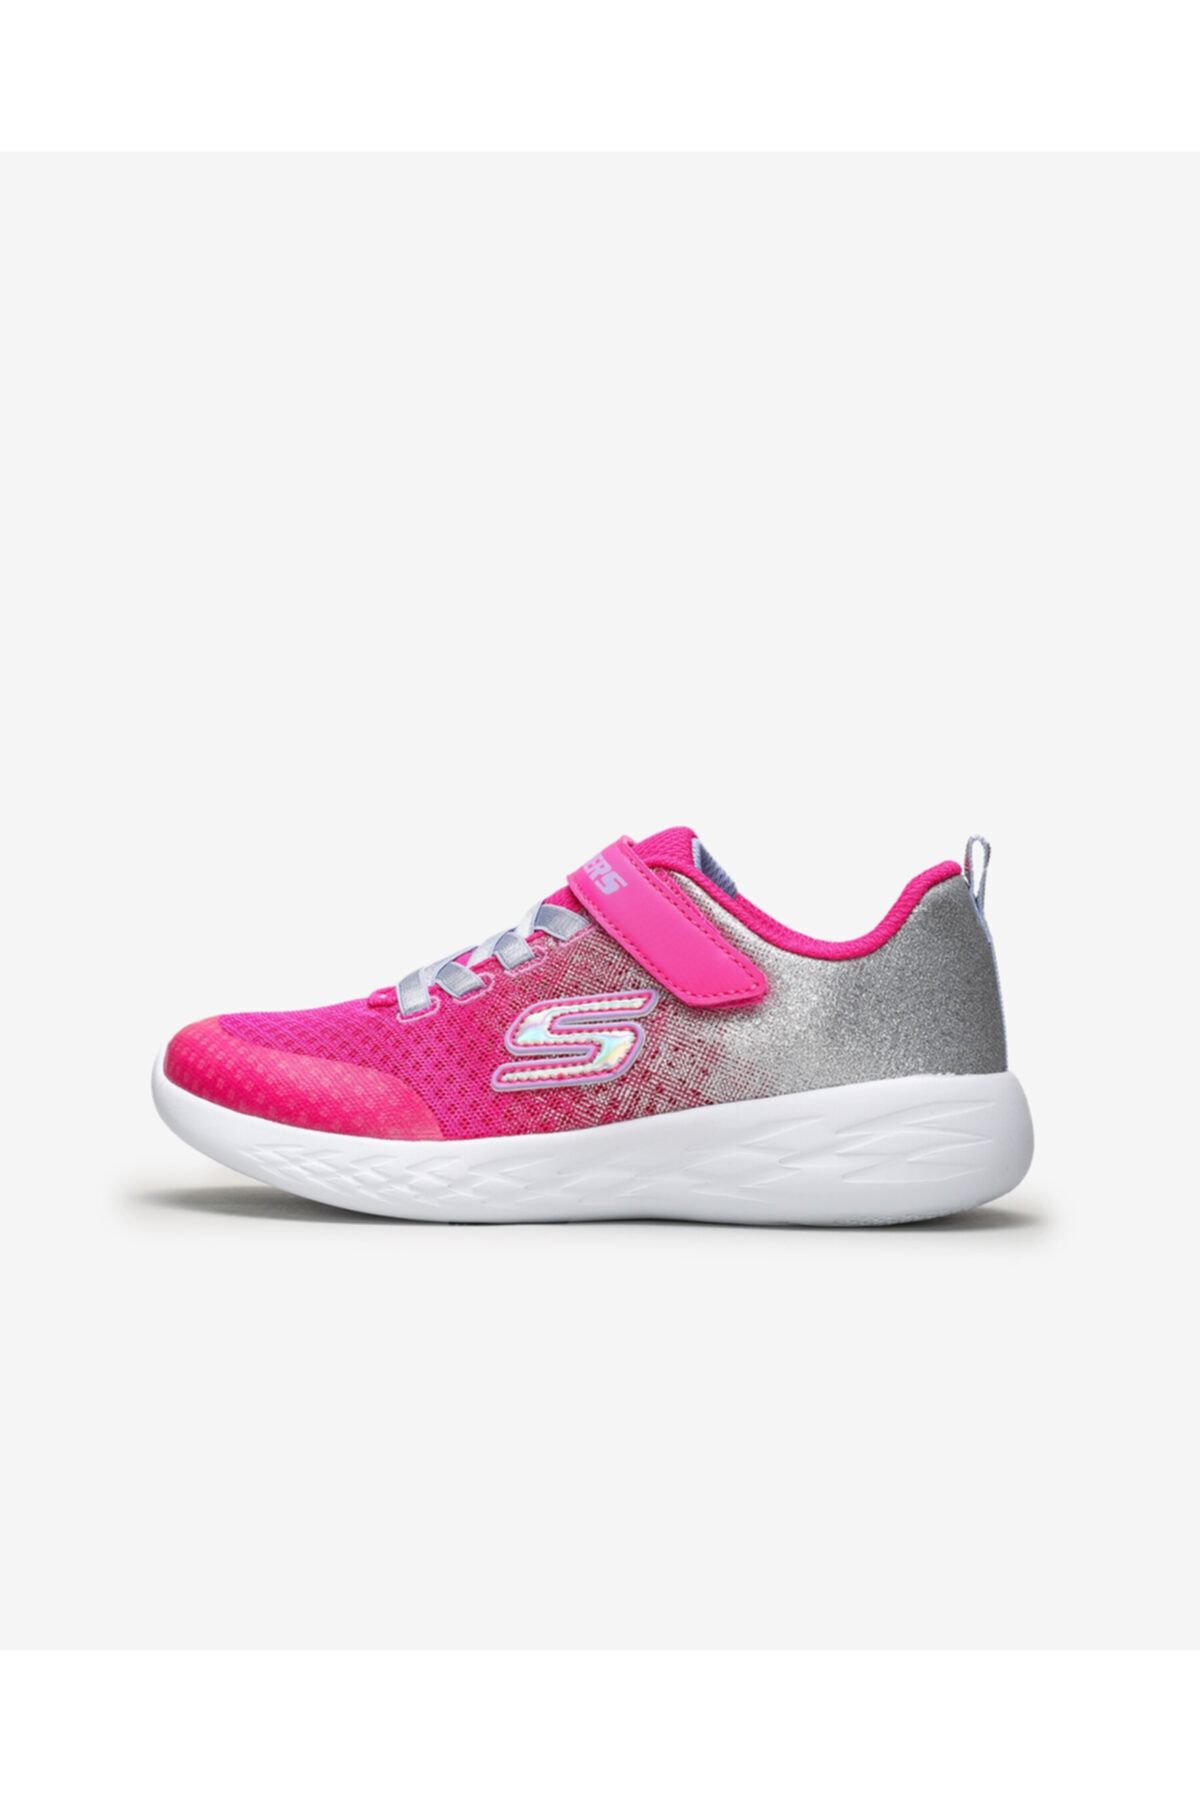 Skechers GO RUN 600-SPRİNKLE SPLASH Büyük Kız Çocuk Pempe Spor Ayakkabı - 82078L HPSL